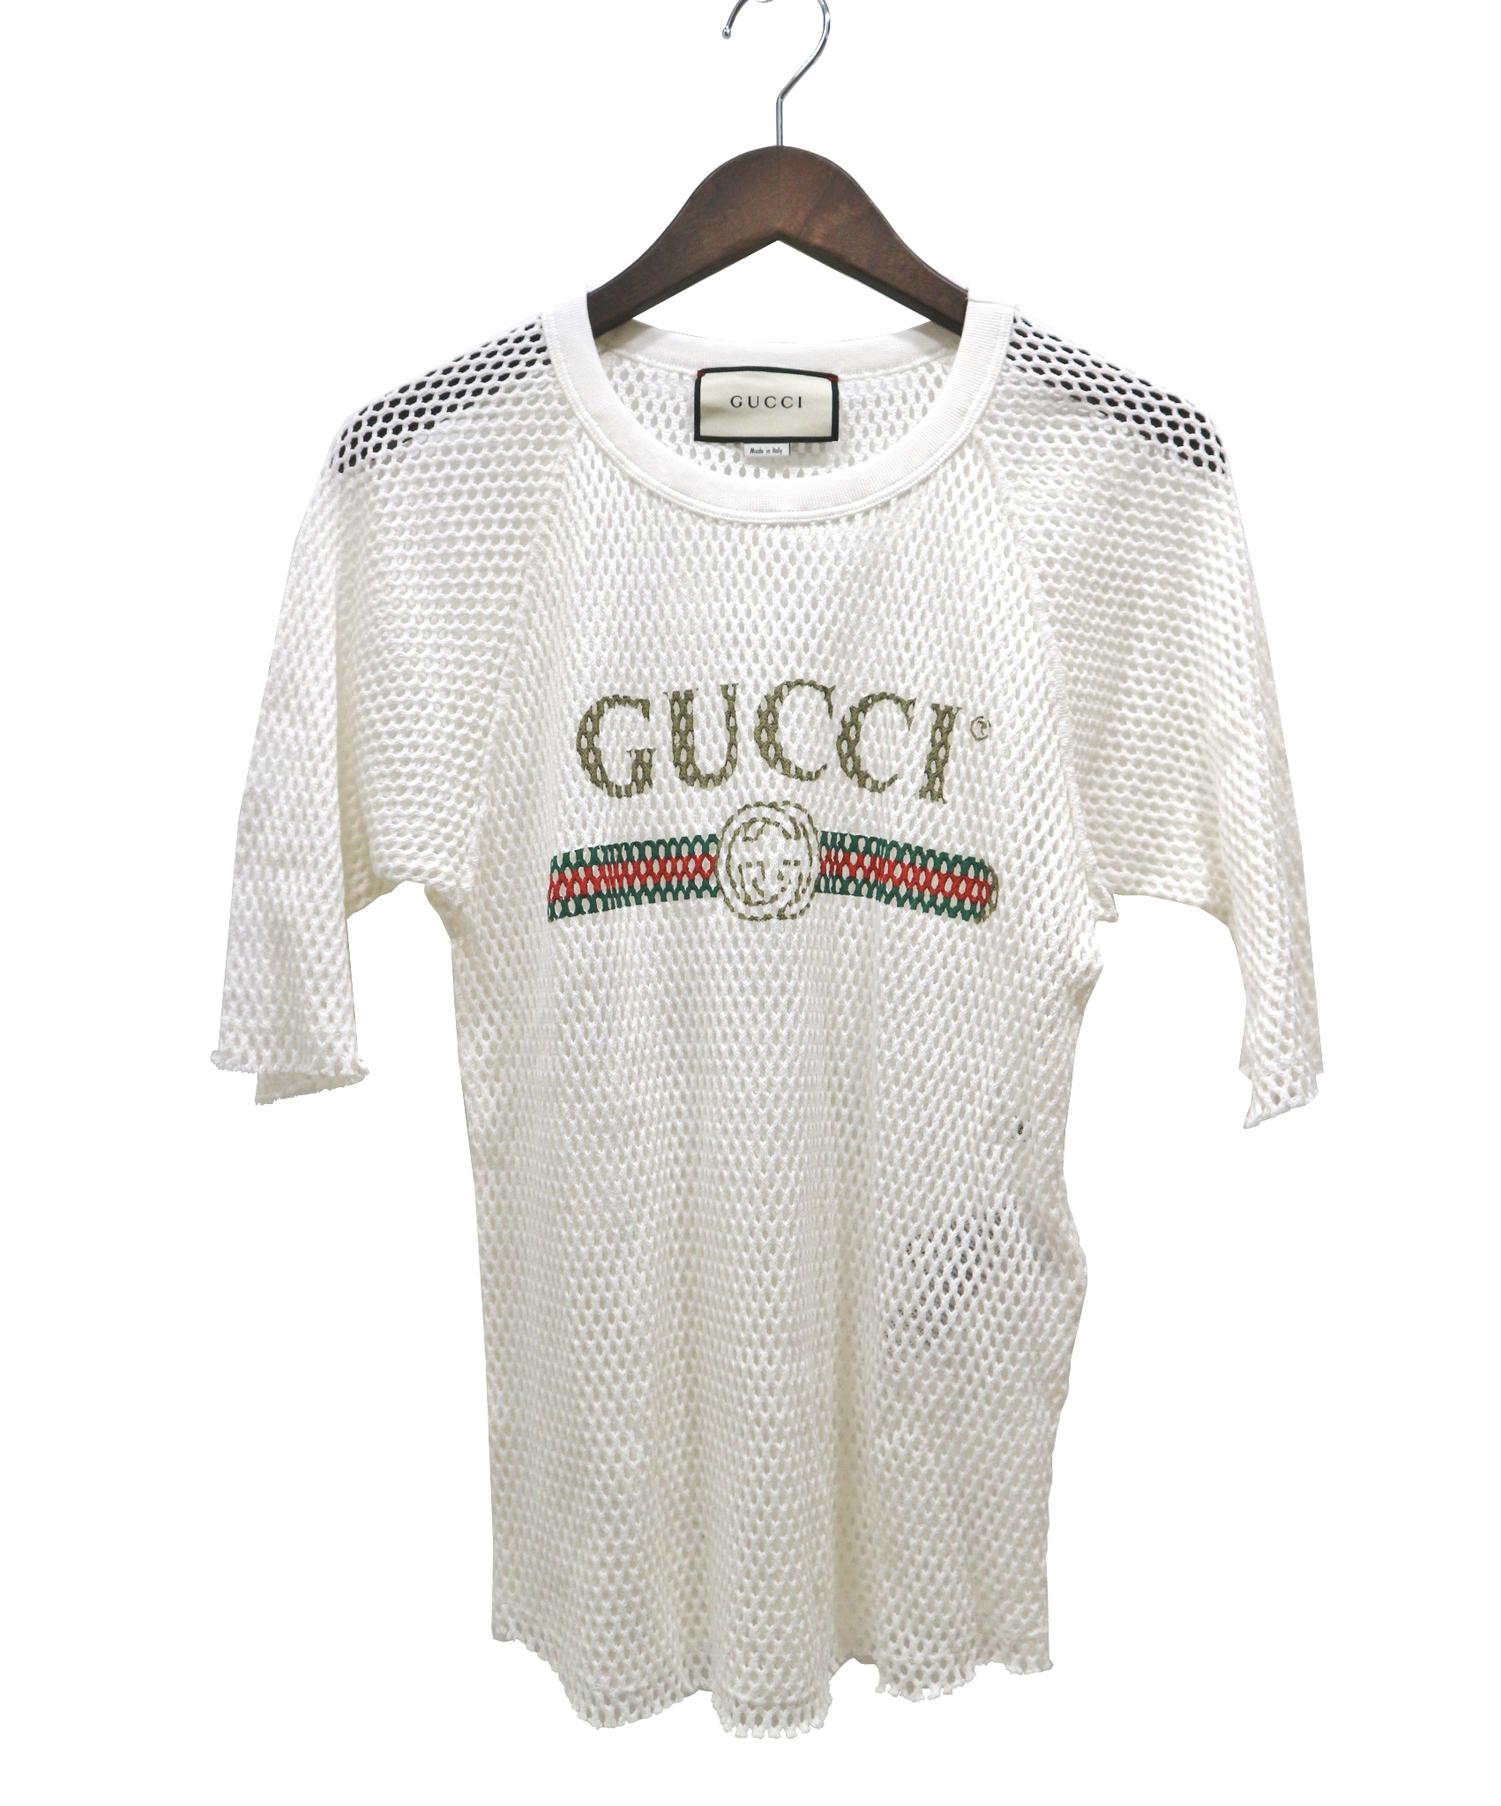 中古 古着通販 Gucci グッチ オールドロゴプリントメッシュtシャツ ホワイト サイズ Size Xs ブランド 古着通販 トレファク公式 Trefac Fashion